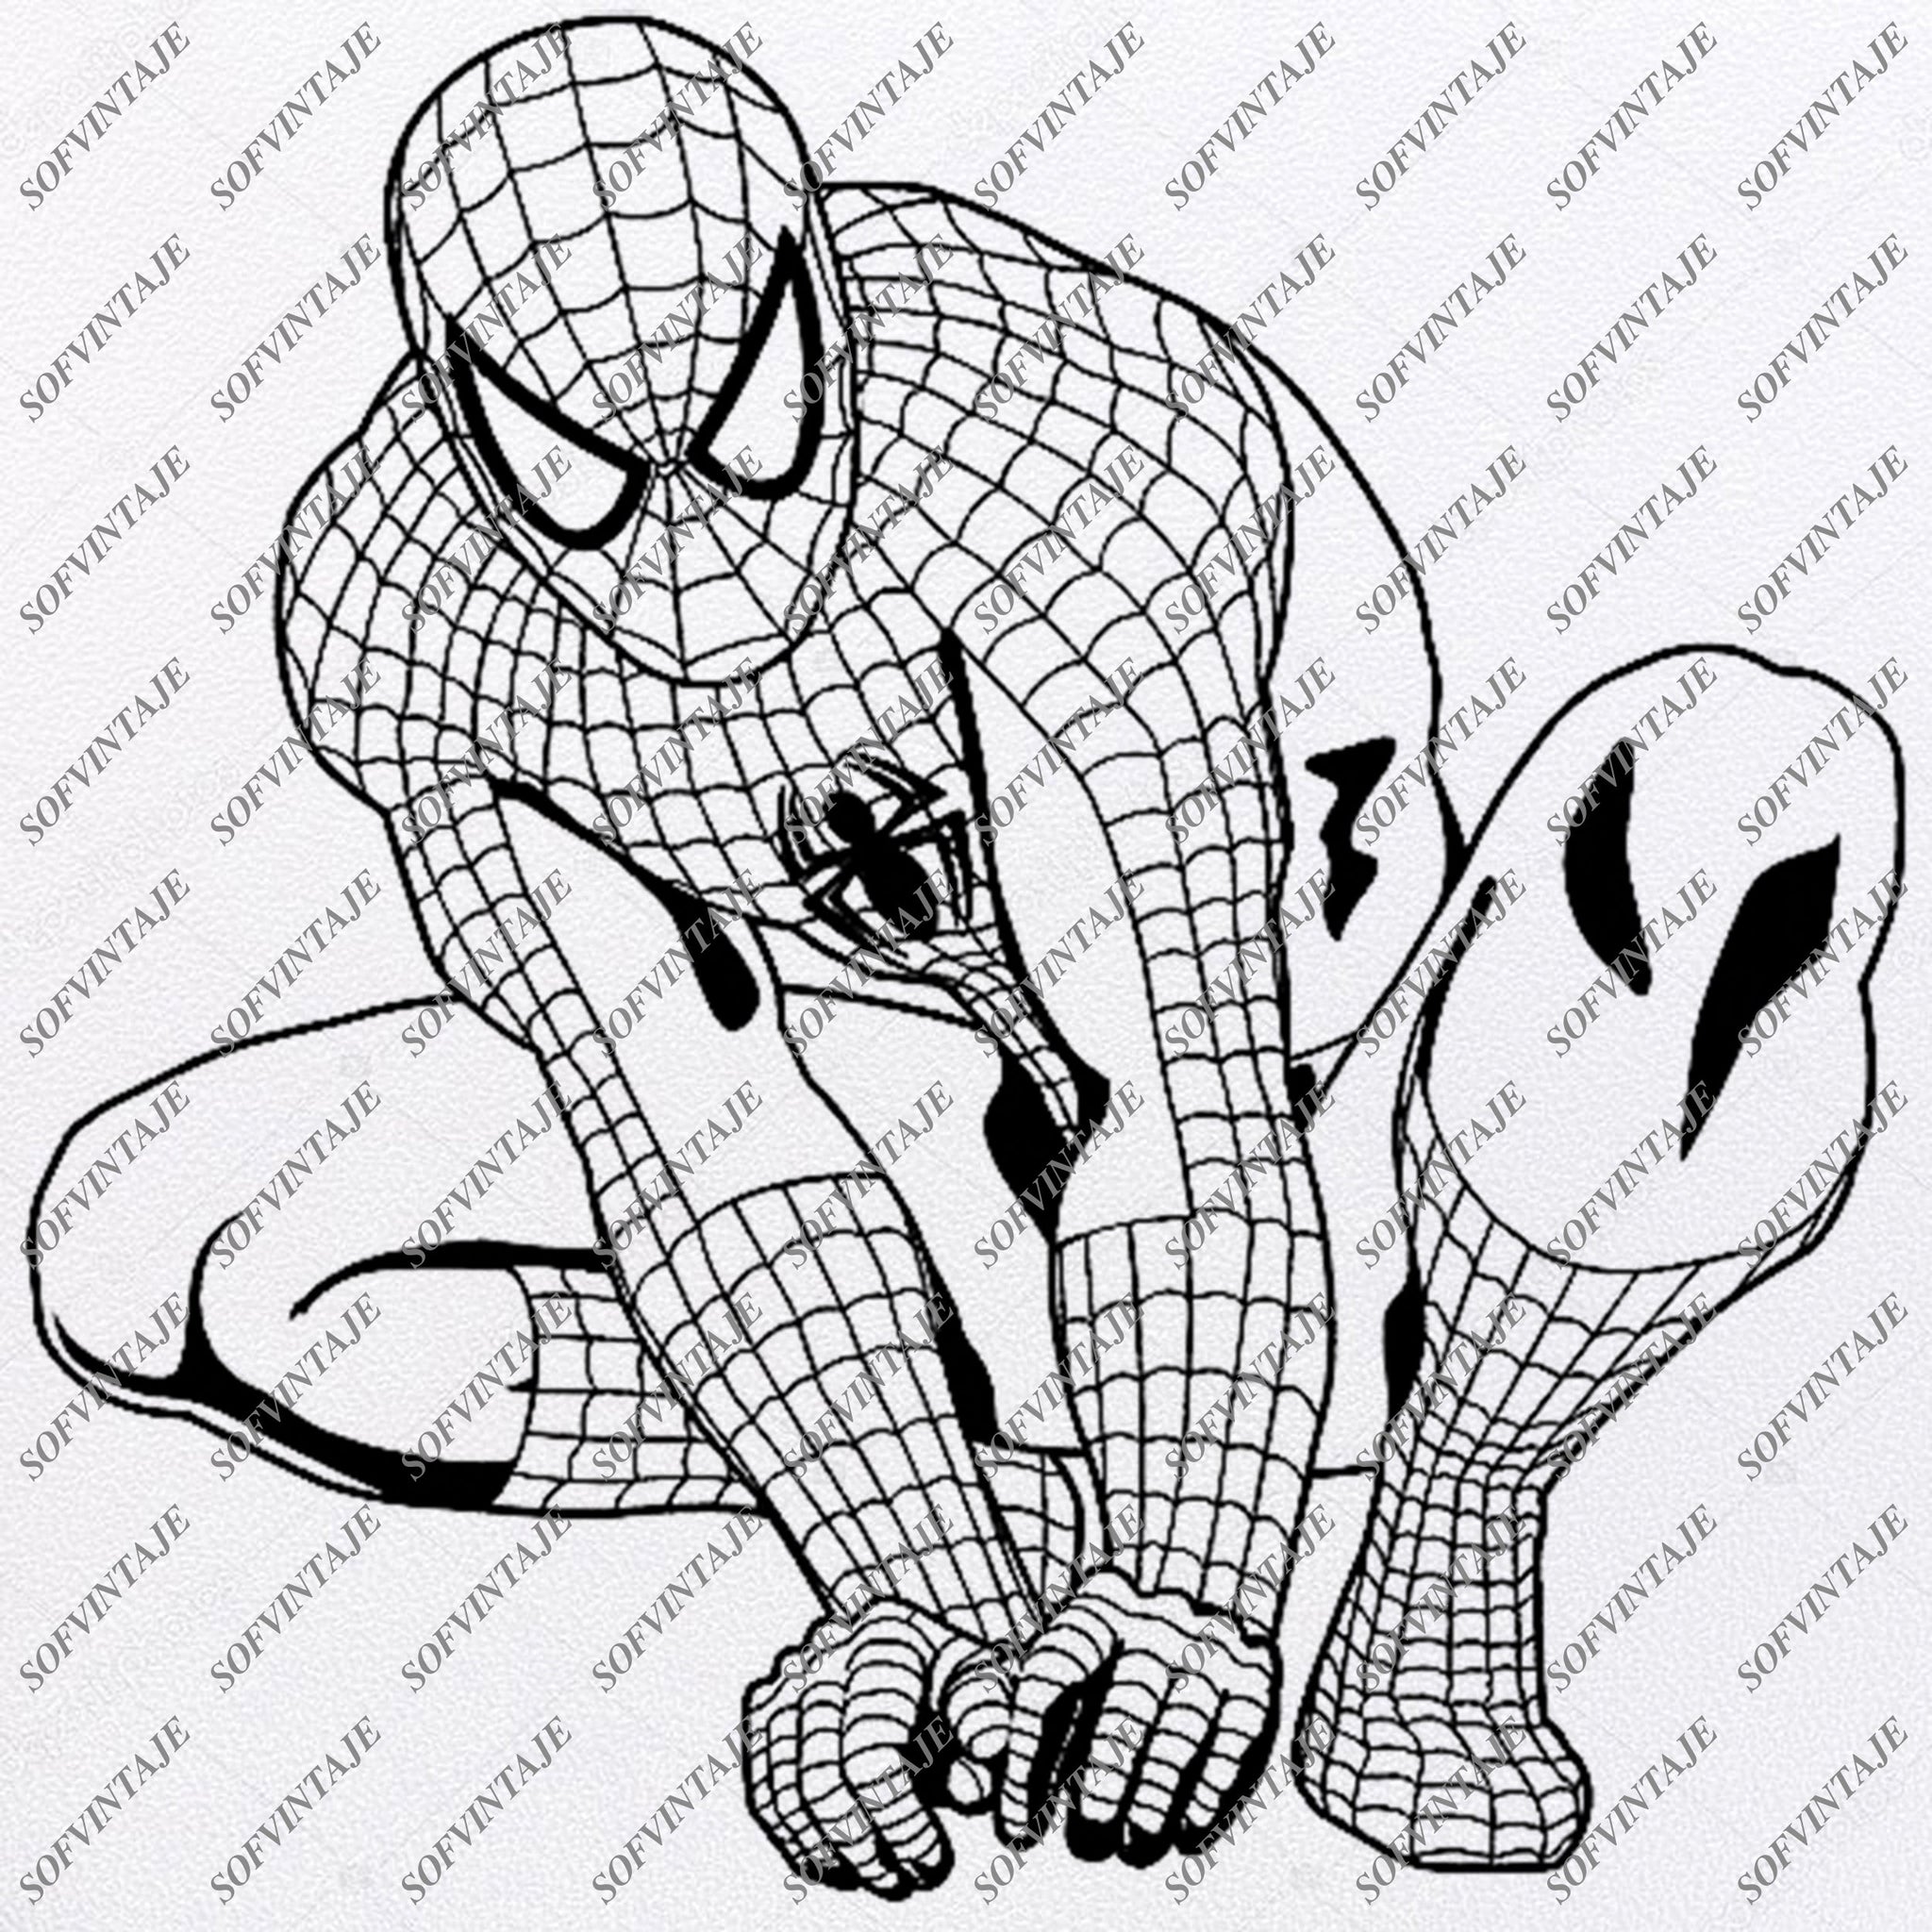 Download Spiderman Svg File Spiderman Original Svg Designtattoo Svg Spiderman C Sofvintaje SVG, PNG, EPS, DXF File